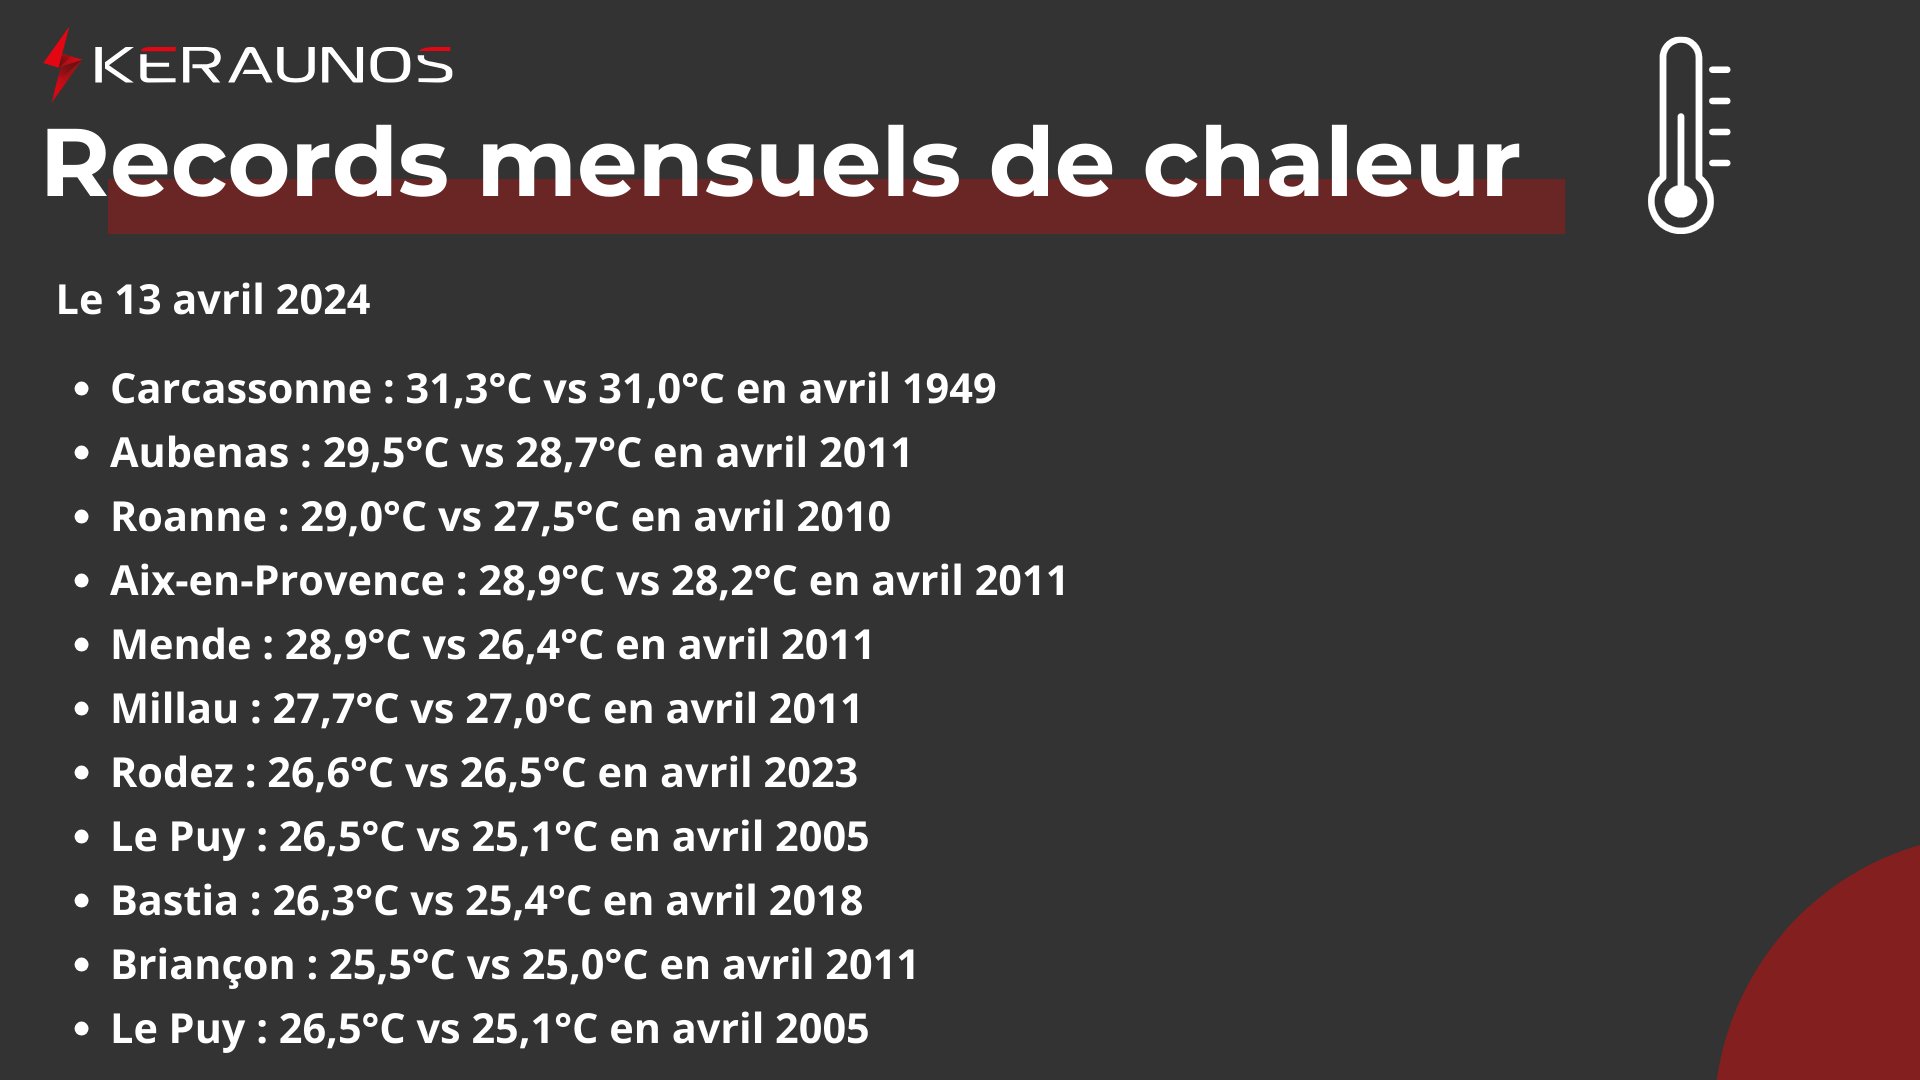 <p>Une chaleur exceptionnelle a concerné plusieurs régions du sud de la France ce samedi, avec jusqu'à 32°C dans les Landes et des records mensuels notamment à Carcassonne avec 31,3°C.</p>